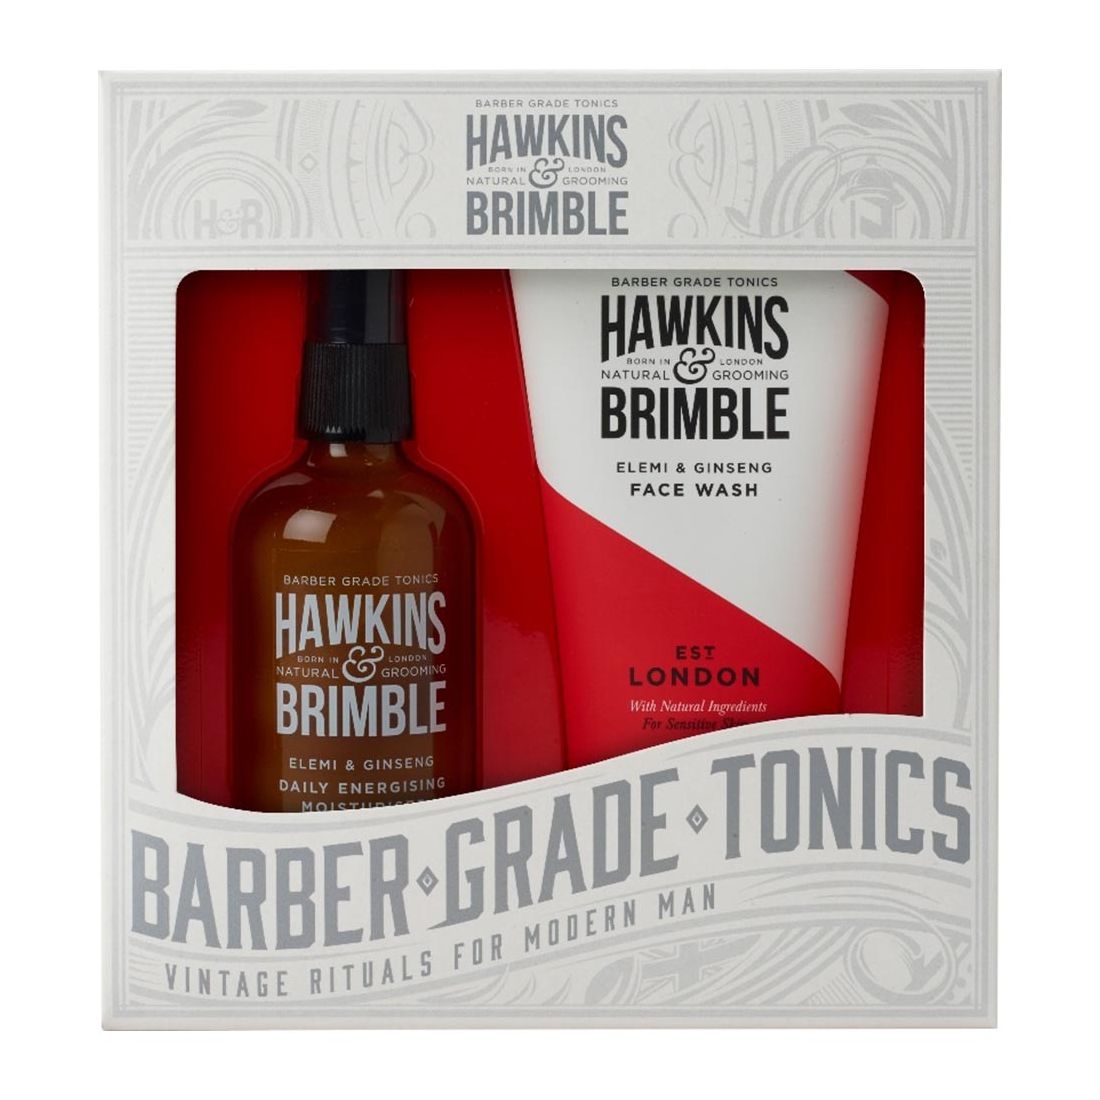 Hawkins & Brimble Face Gift Set Face Wash & Daily Moisturiser